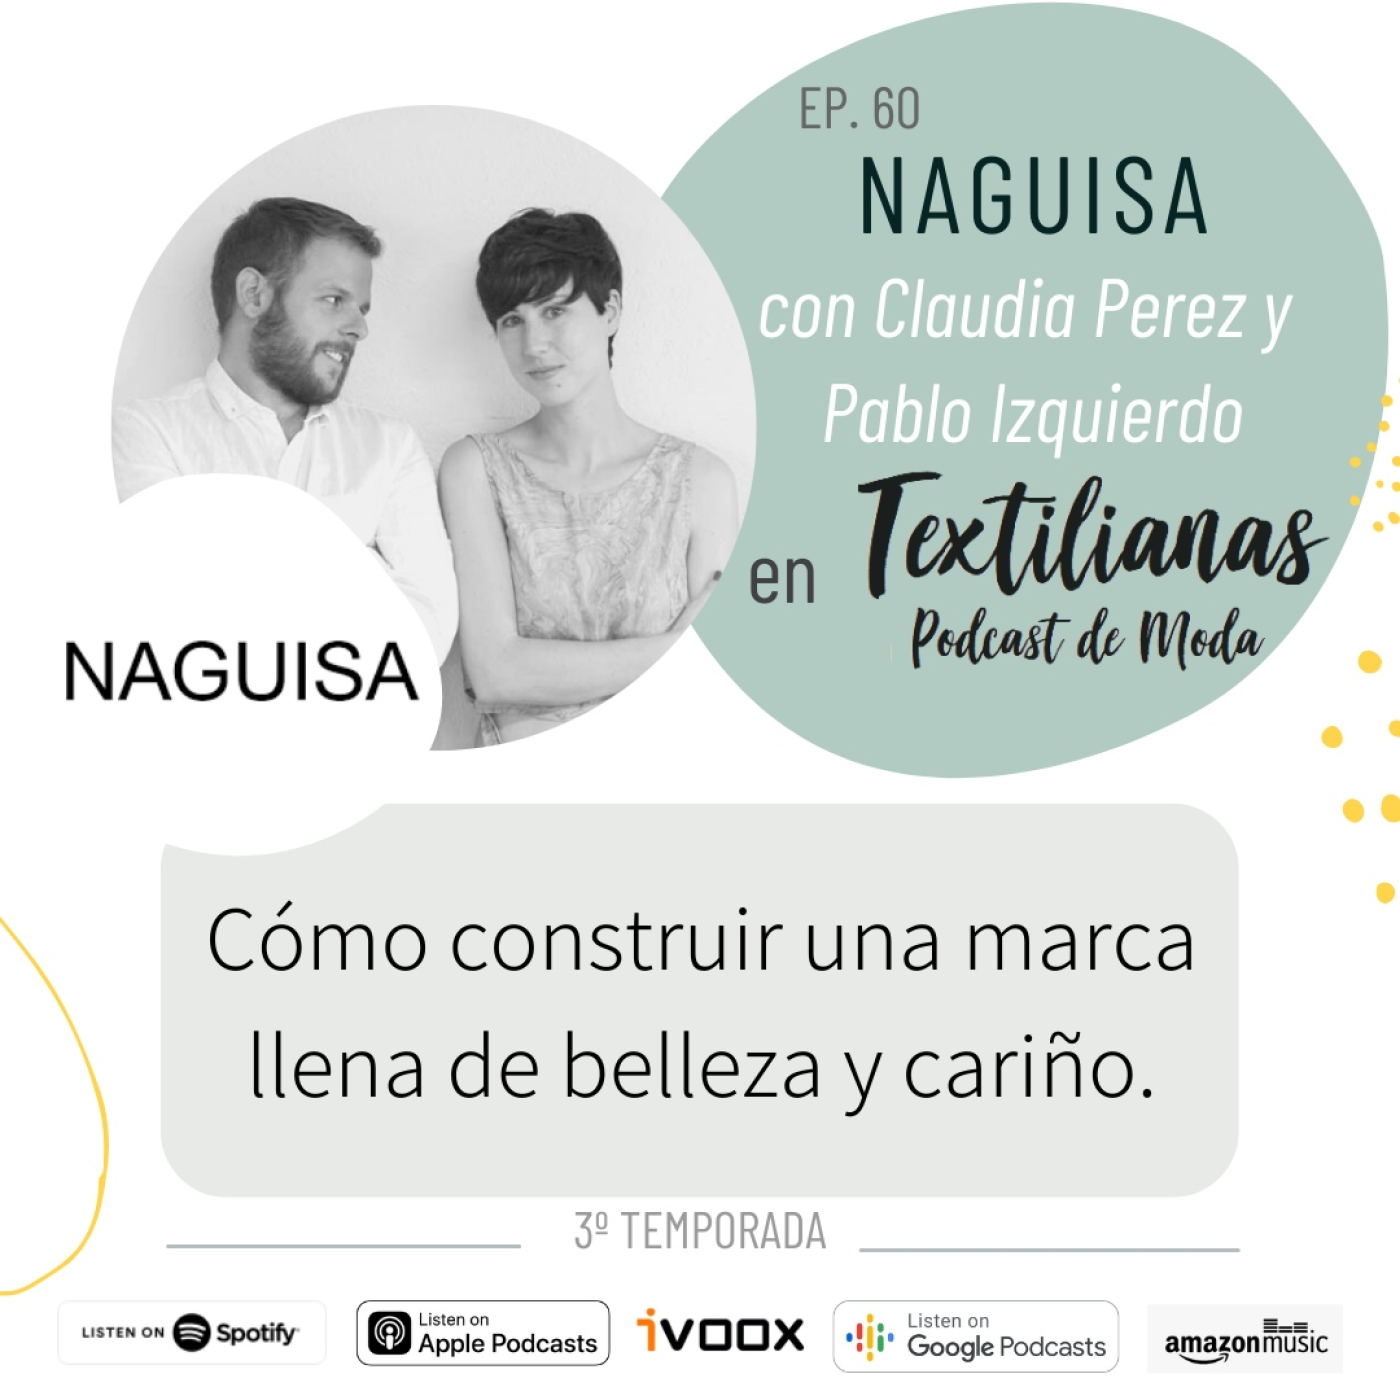 Ep. 60 Cómo construir una marca llena de belleza y cariño. Con NAGUISA (Claudia Pérez y Pablo Izquierdo).